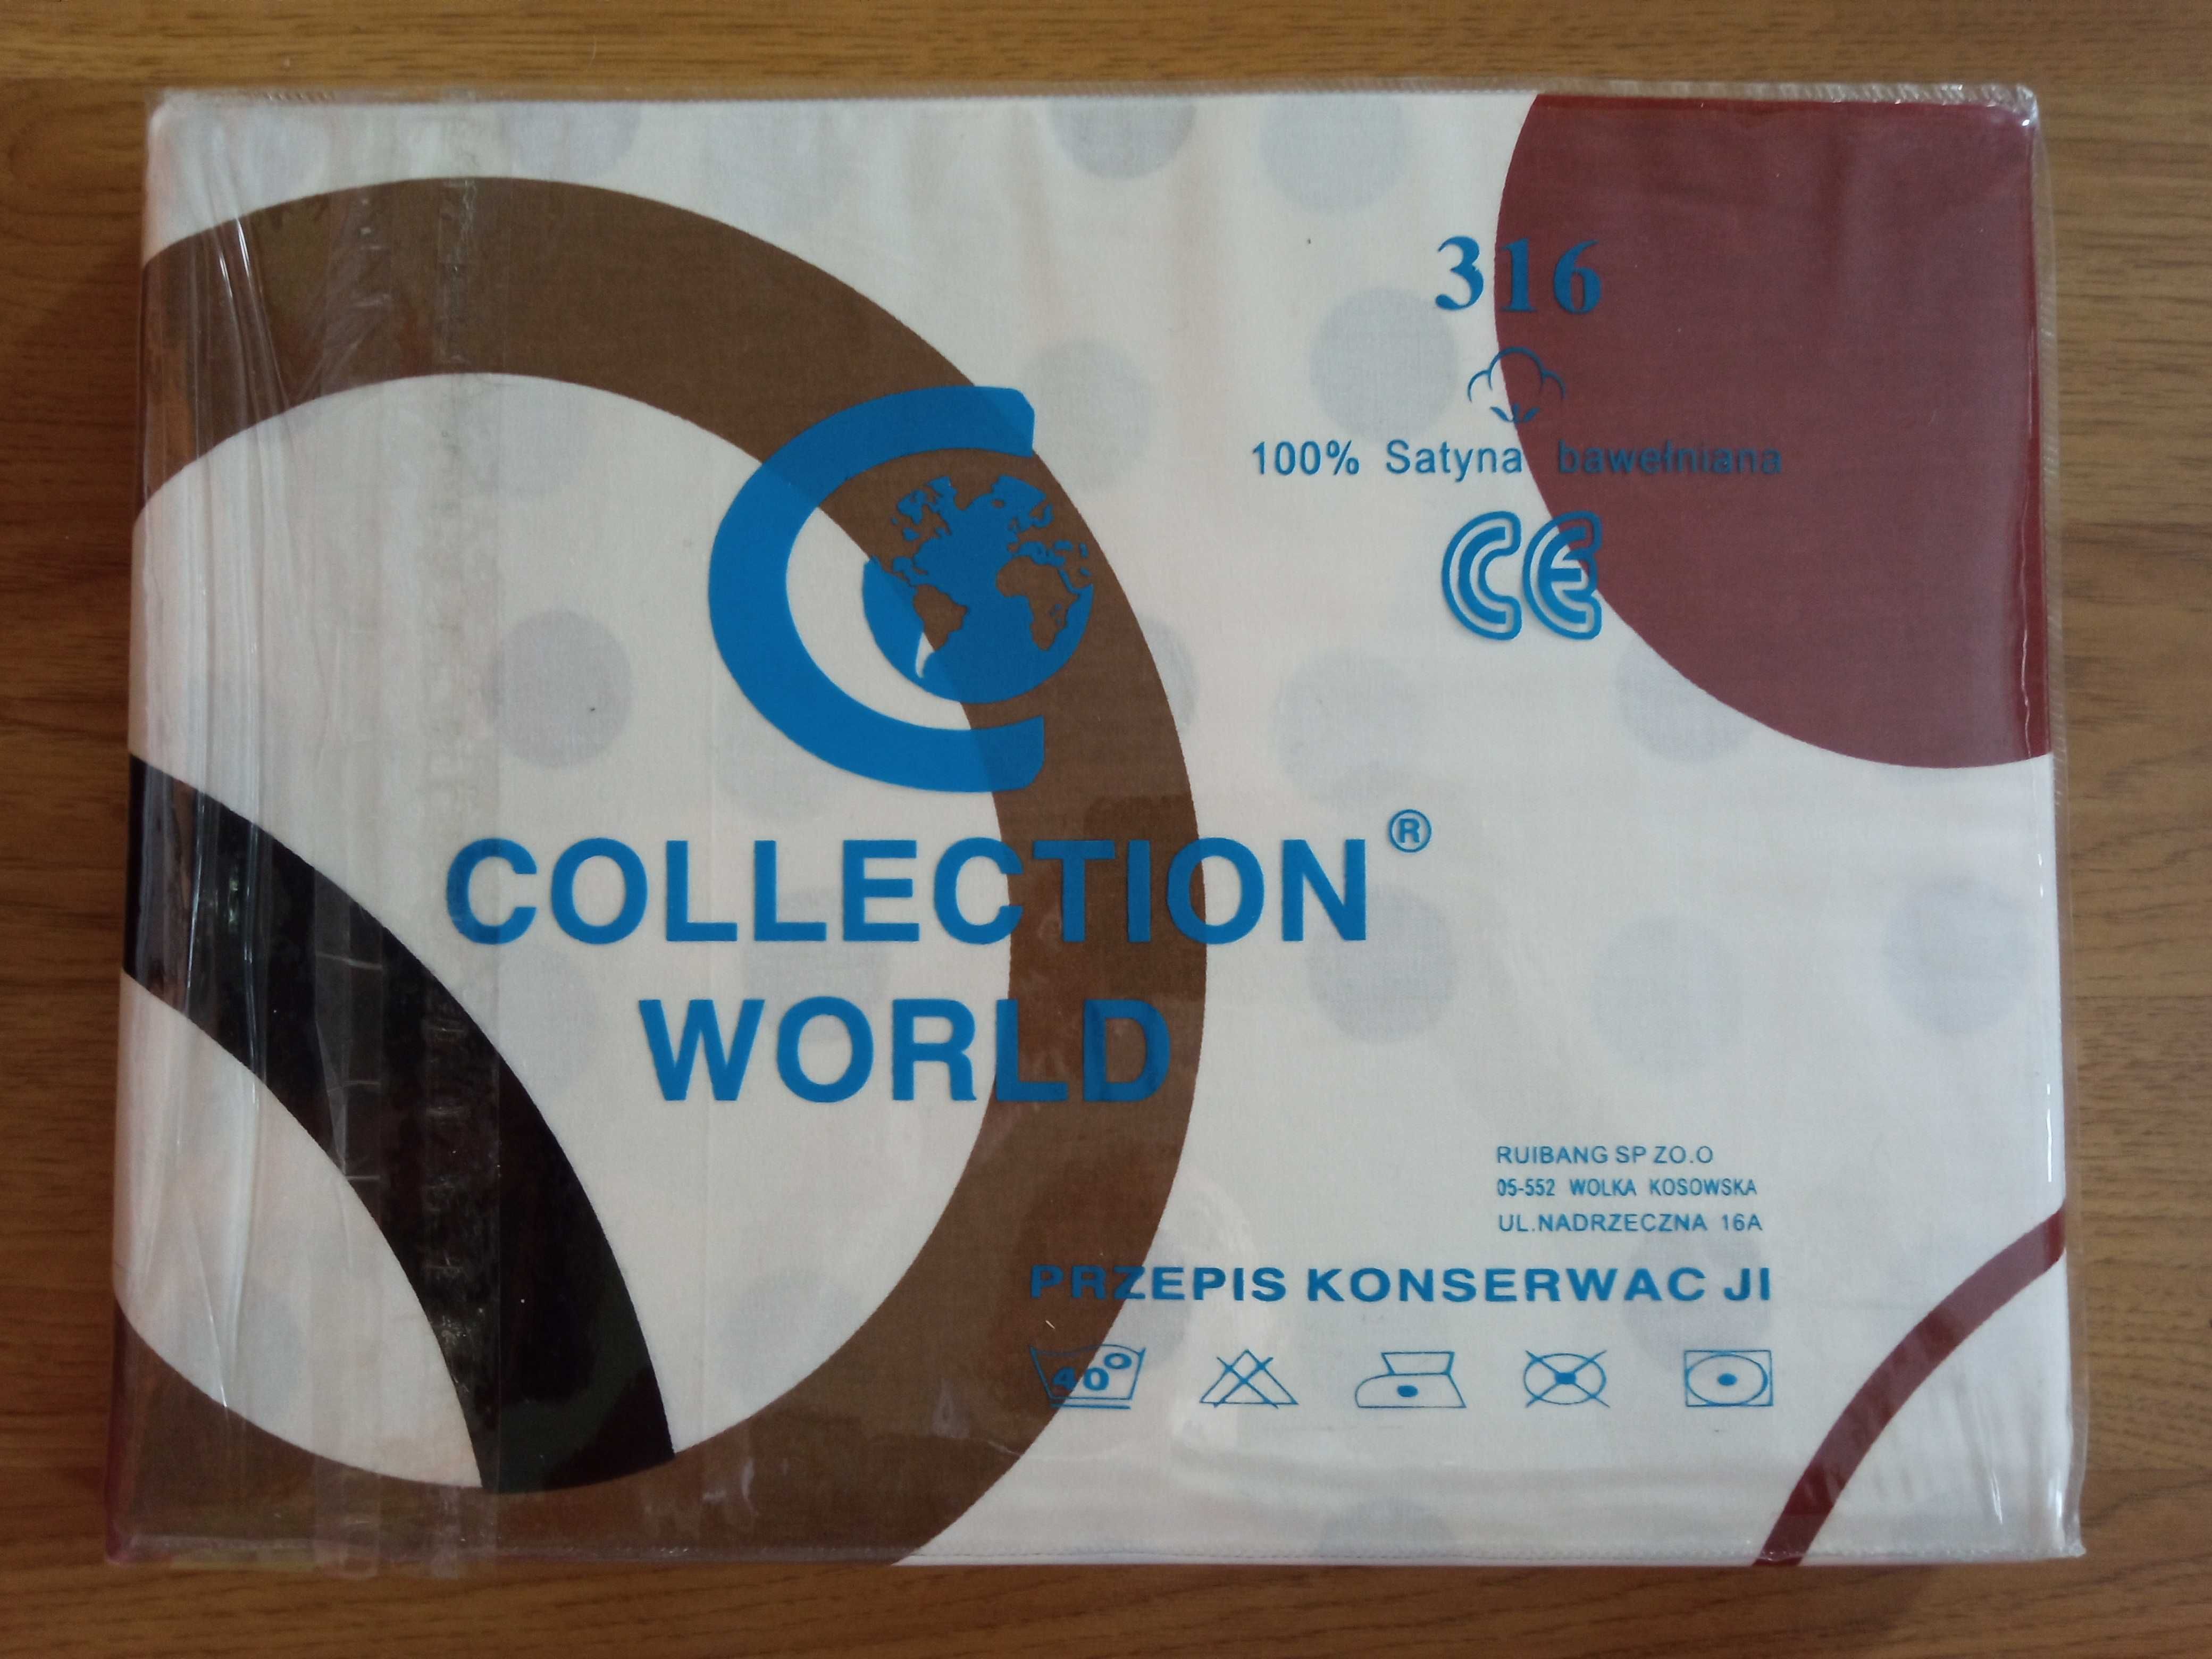 Pościel 160x200 Satyna bawełniana collection world